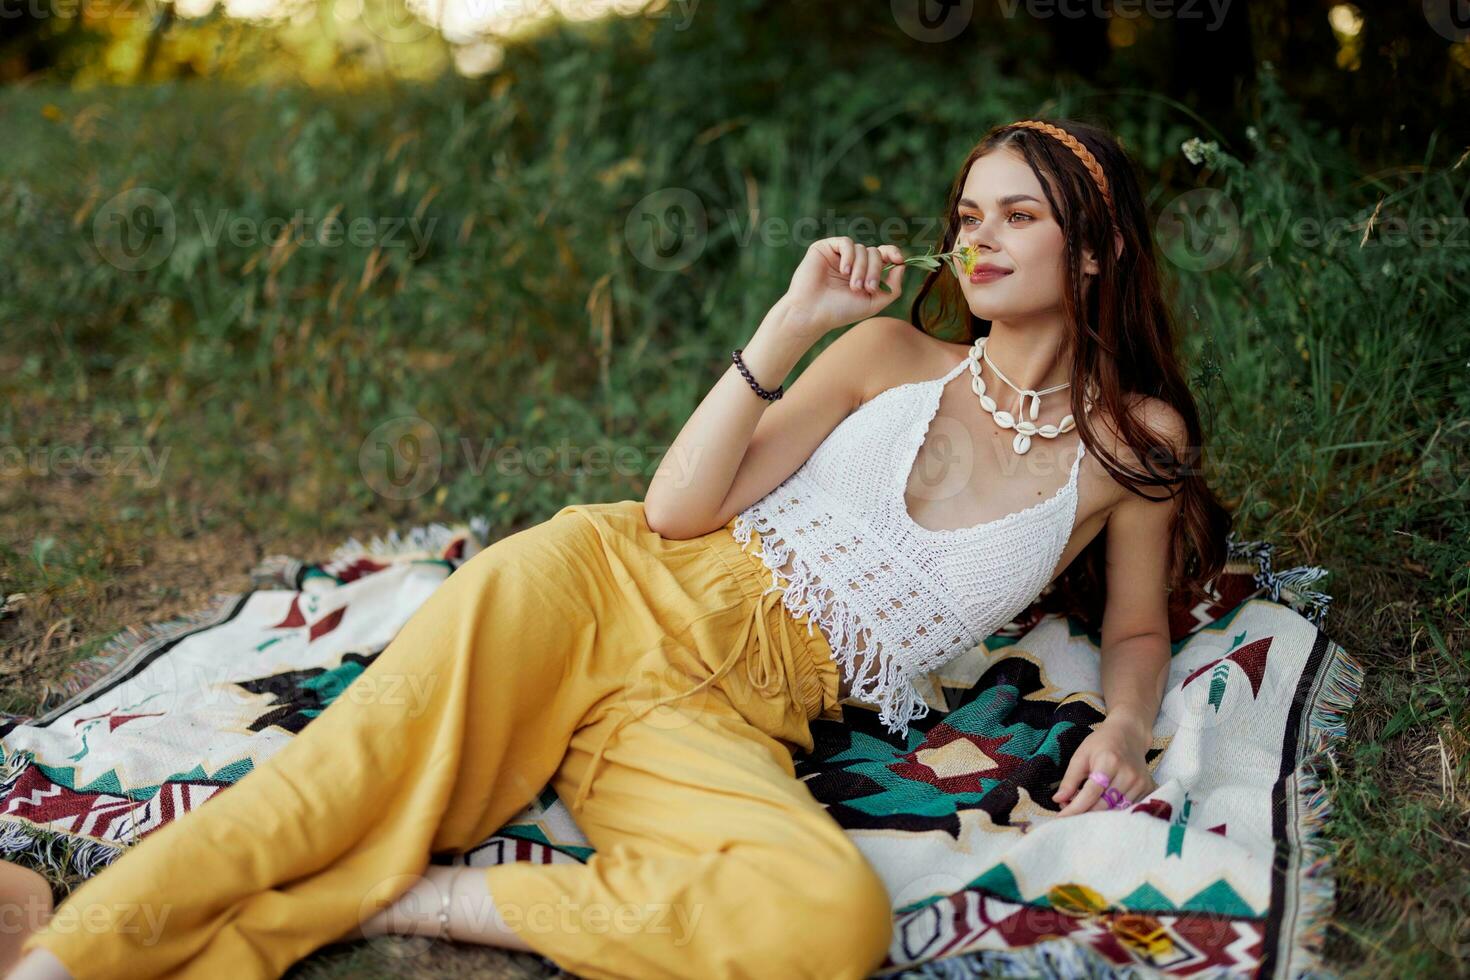 Jeune magnifique hippie femme mensonge sur le sol dans la nature dans le tomber dans éco vêtements dans Jaune un pantalon dans le le coucher du soleil lumière photo